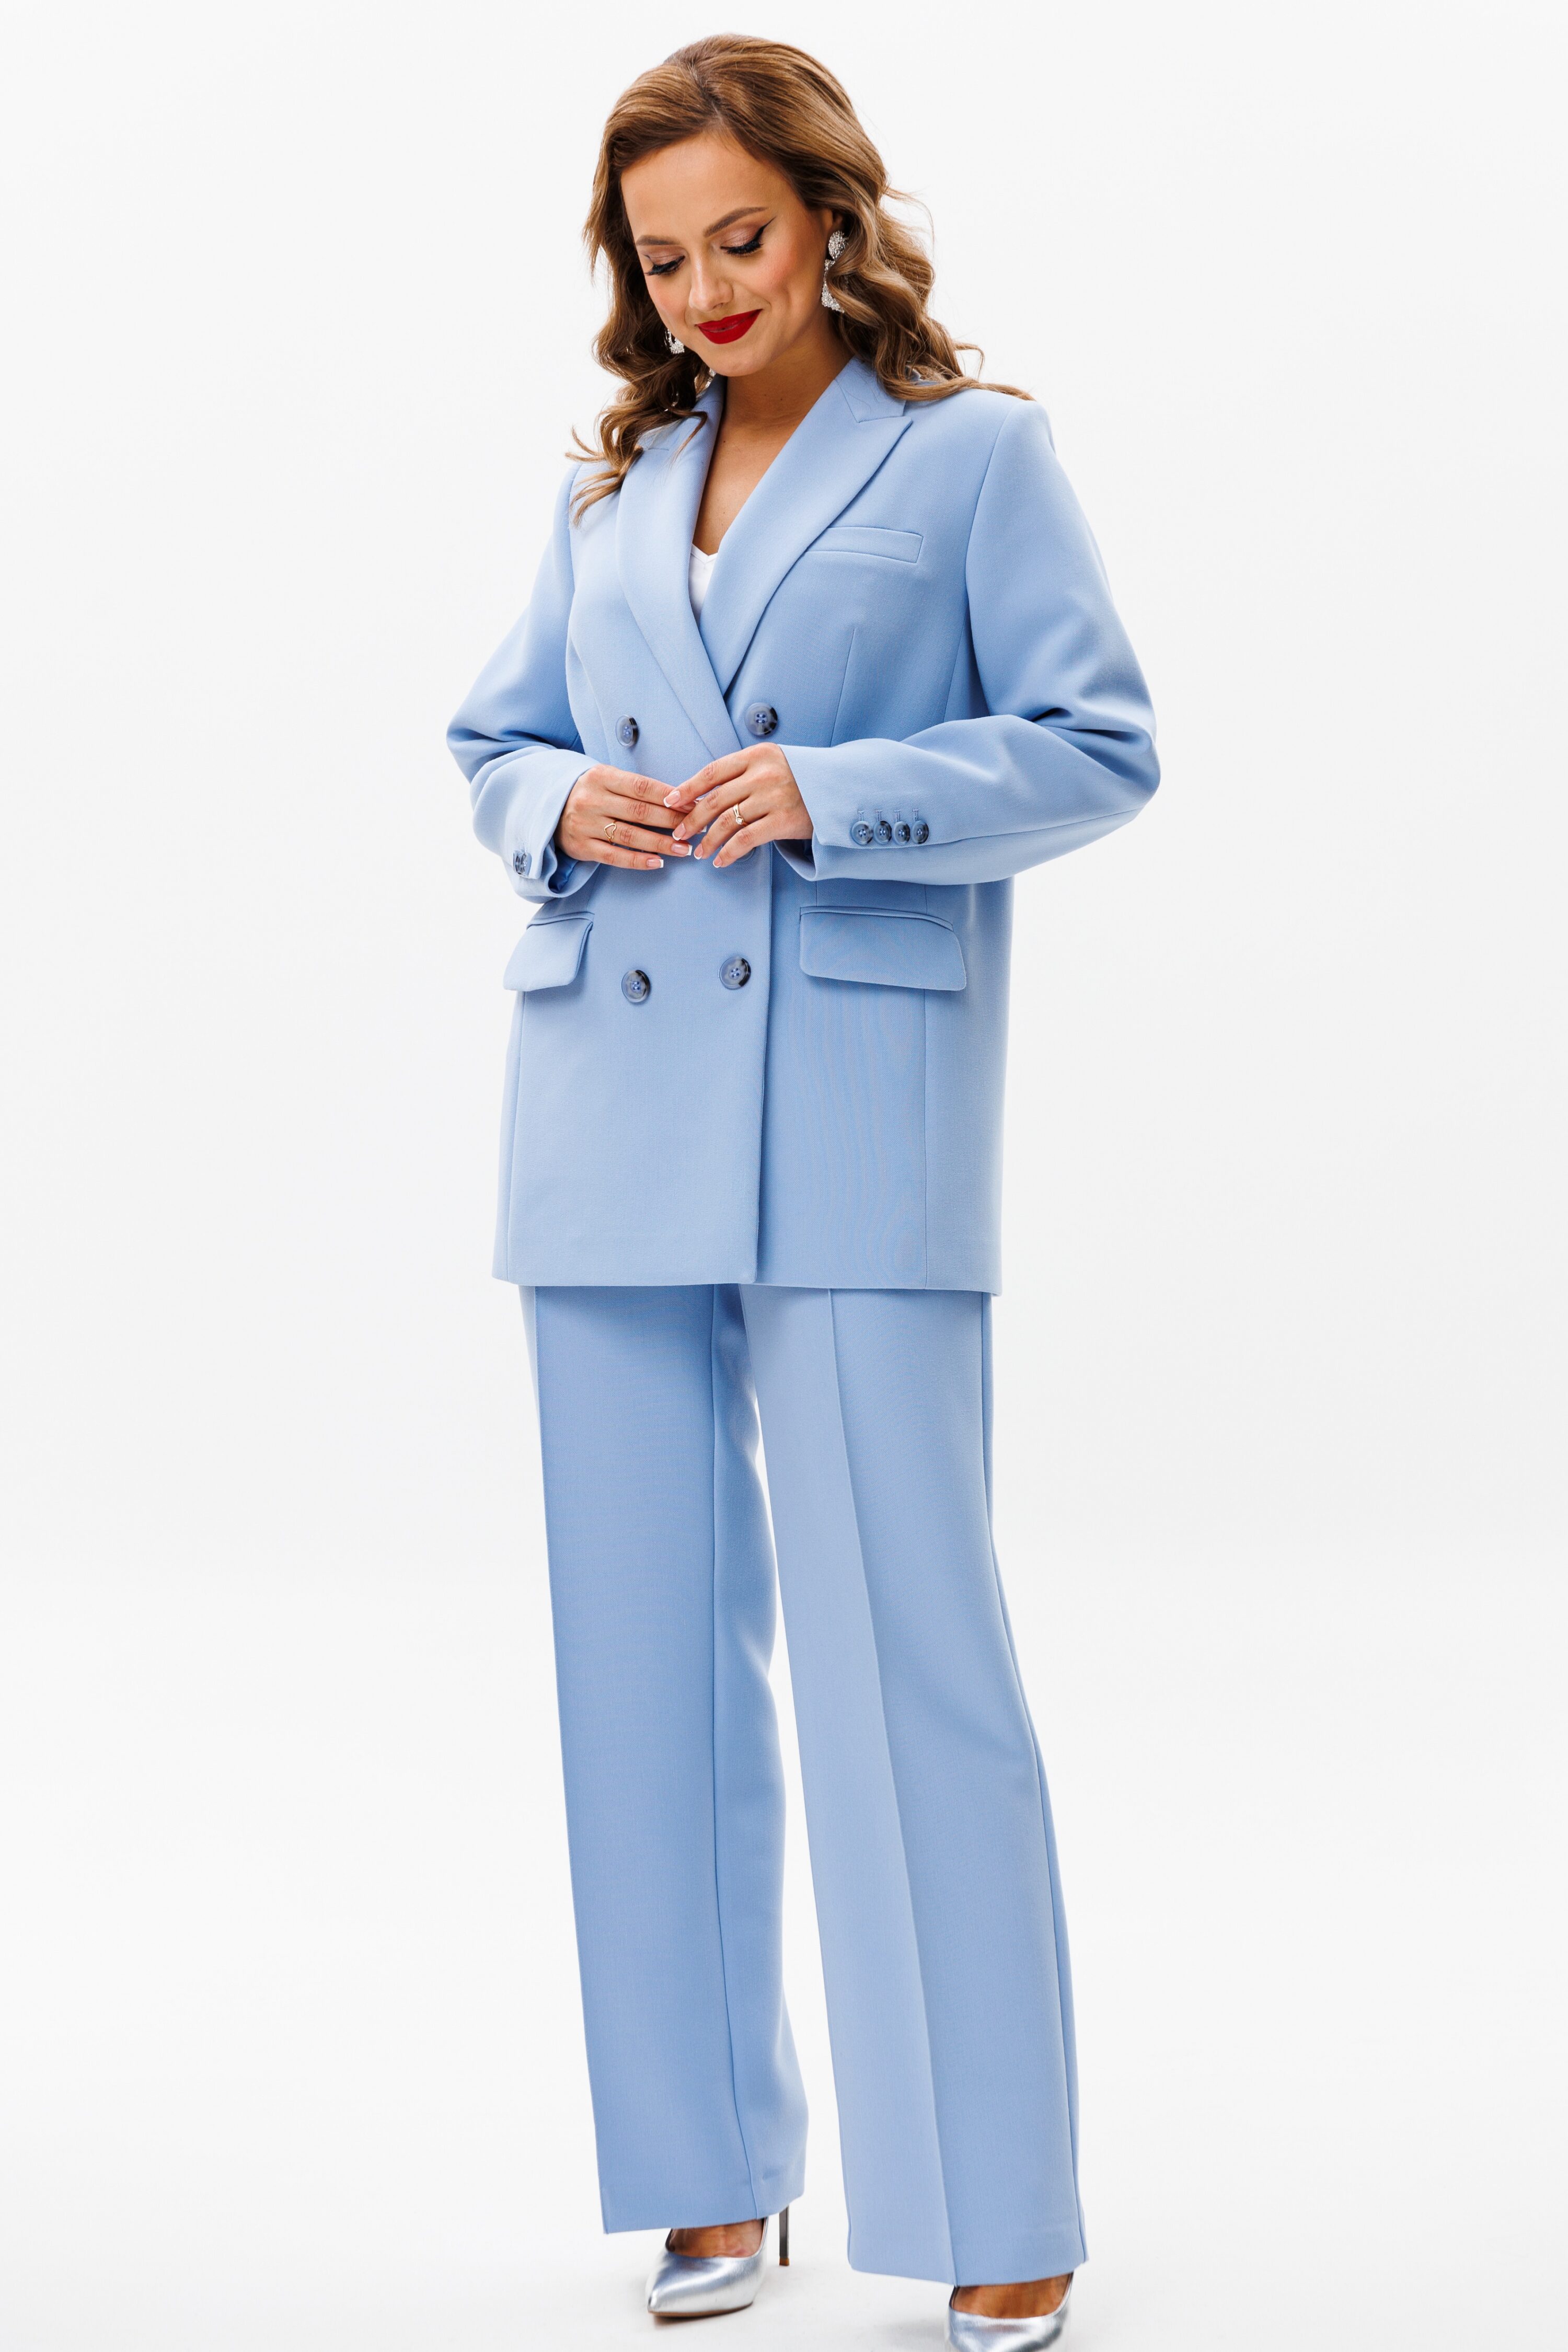 Купить костюм URS 22-965-4 голубой женский брючный